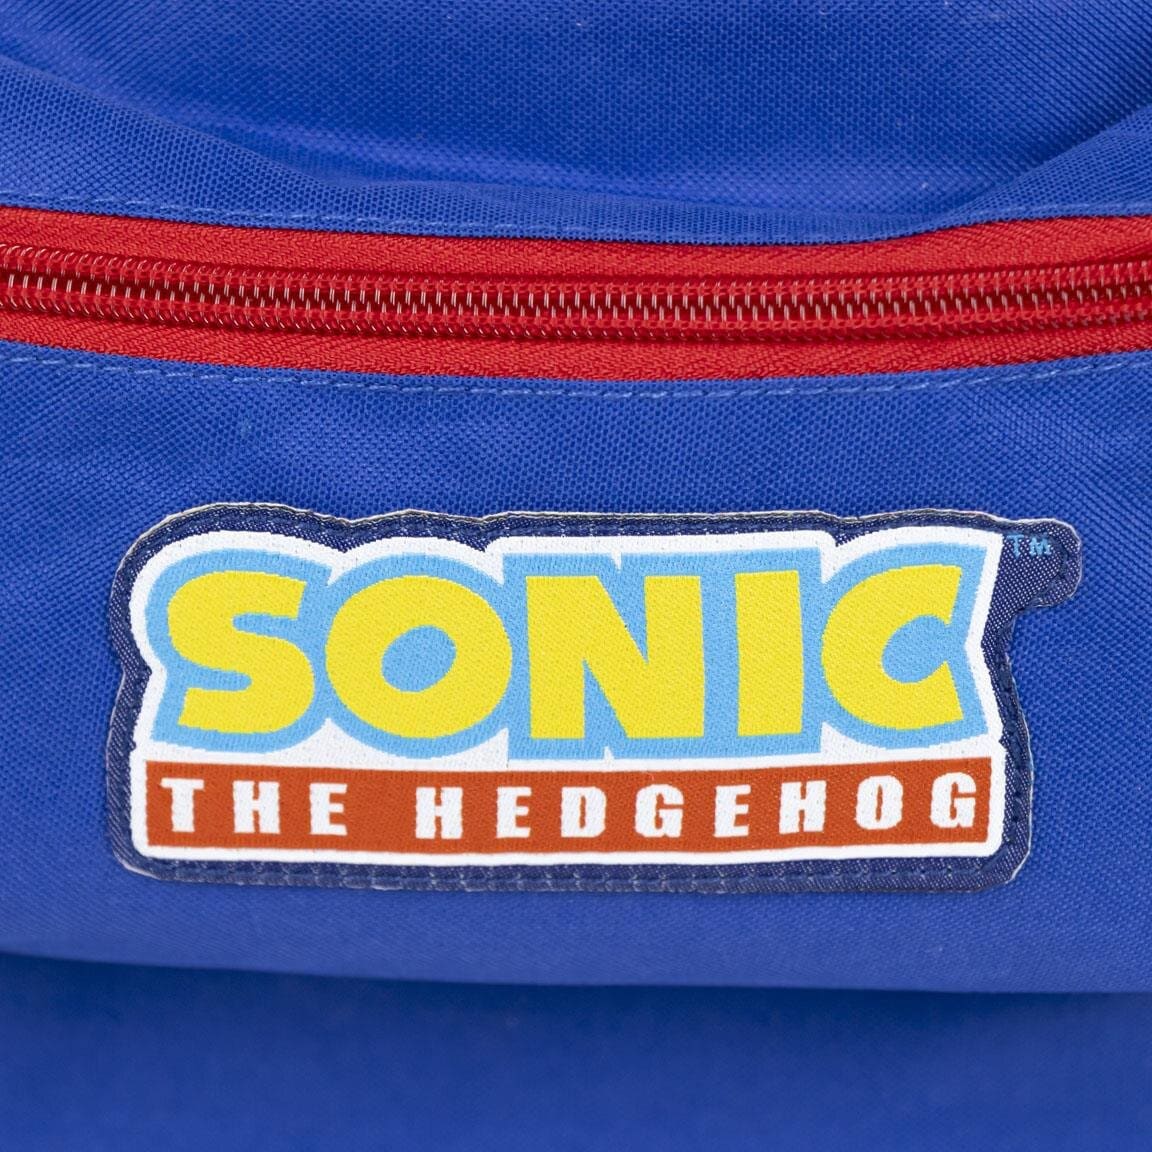 Sonic The Hedgehog - Rygsæk Børnestørrelse